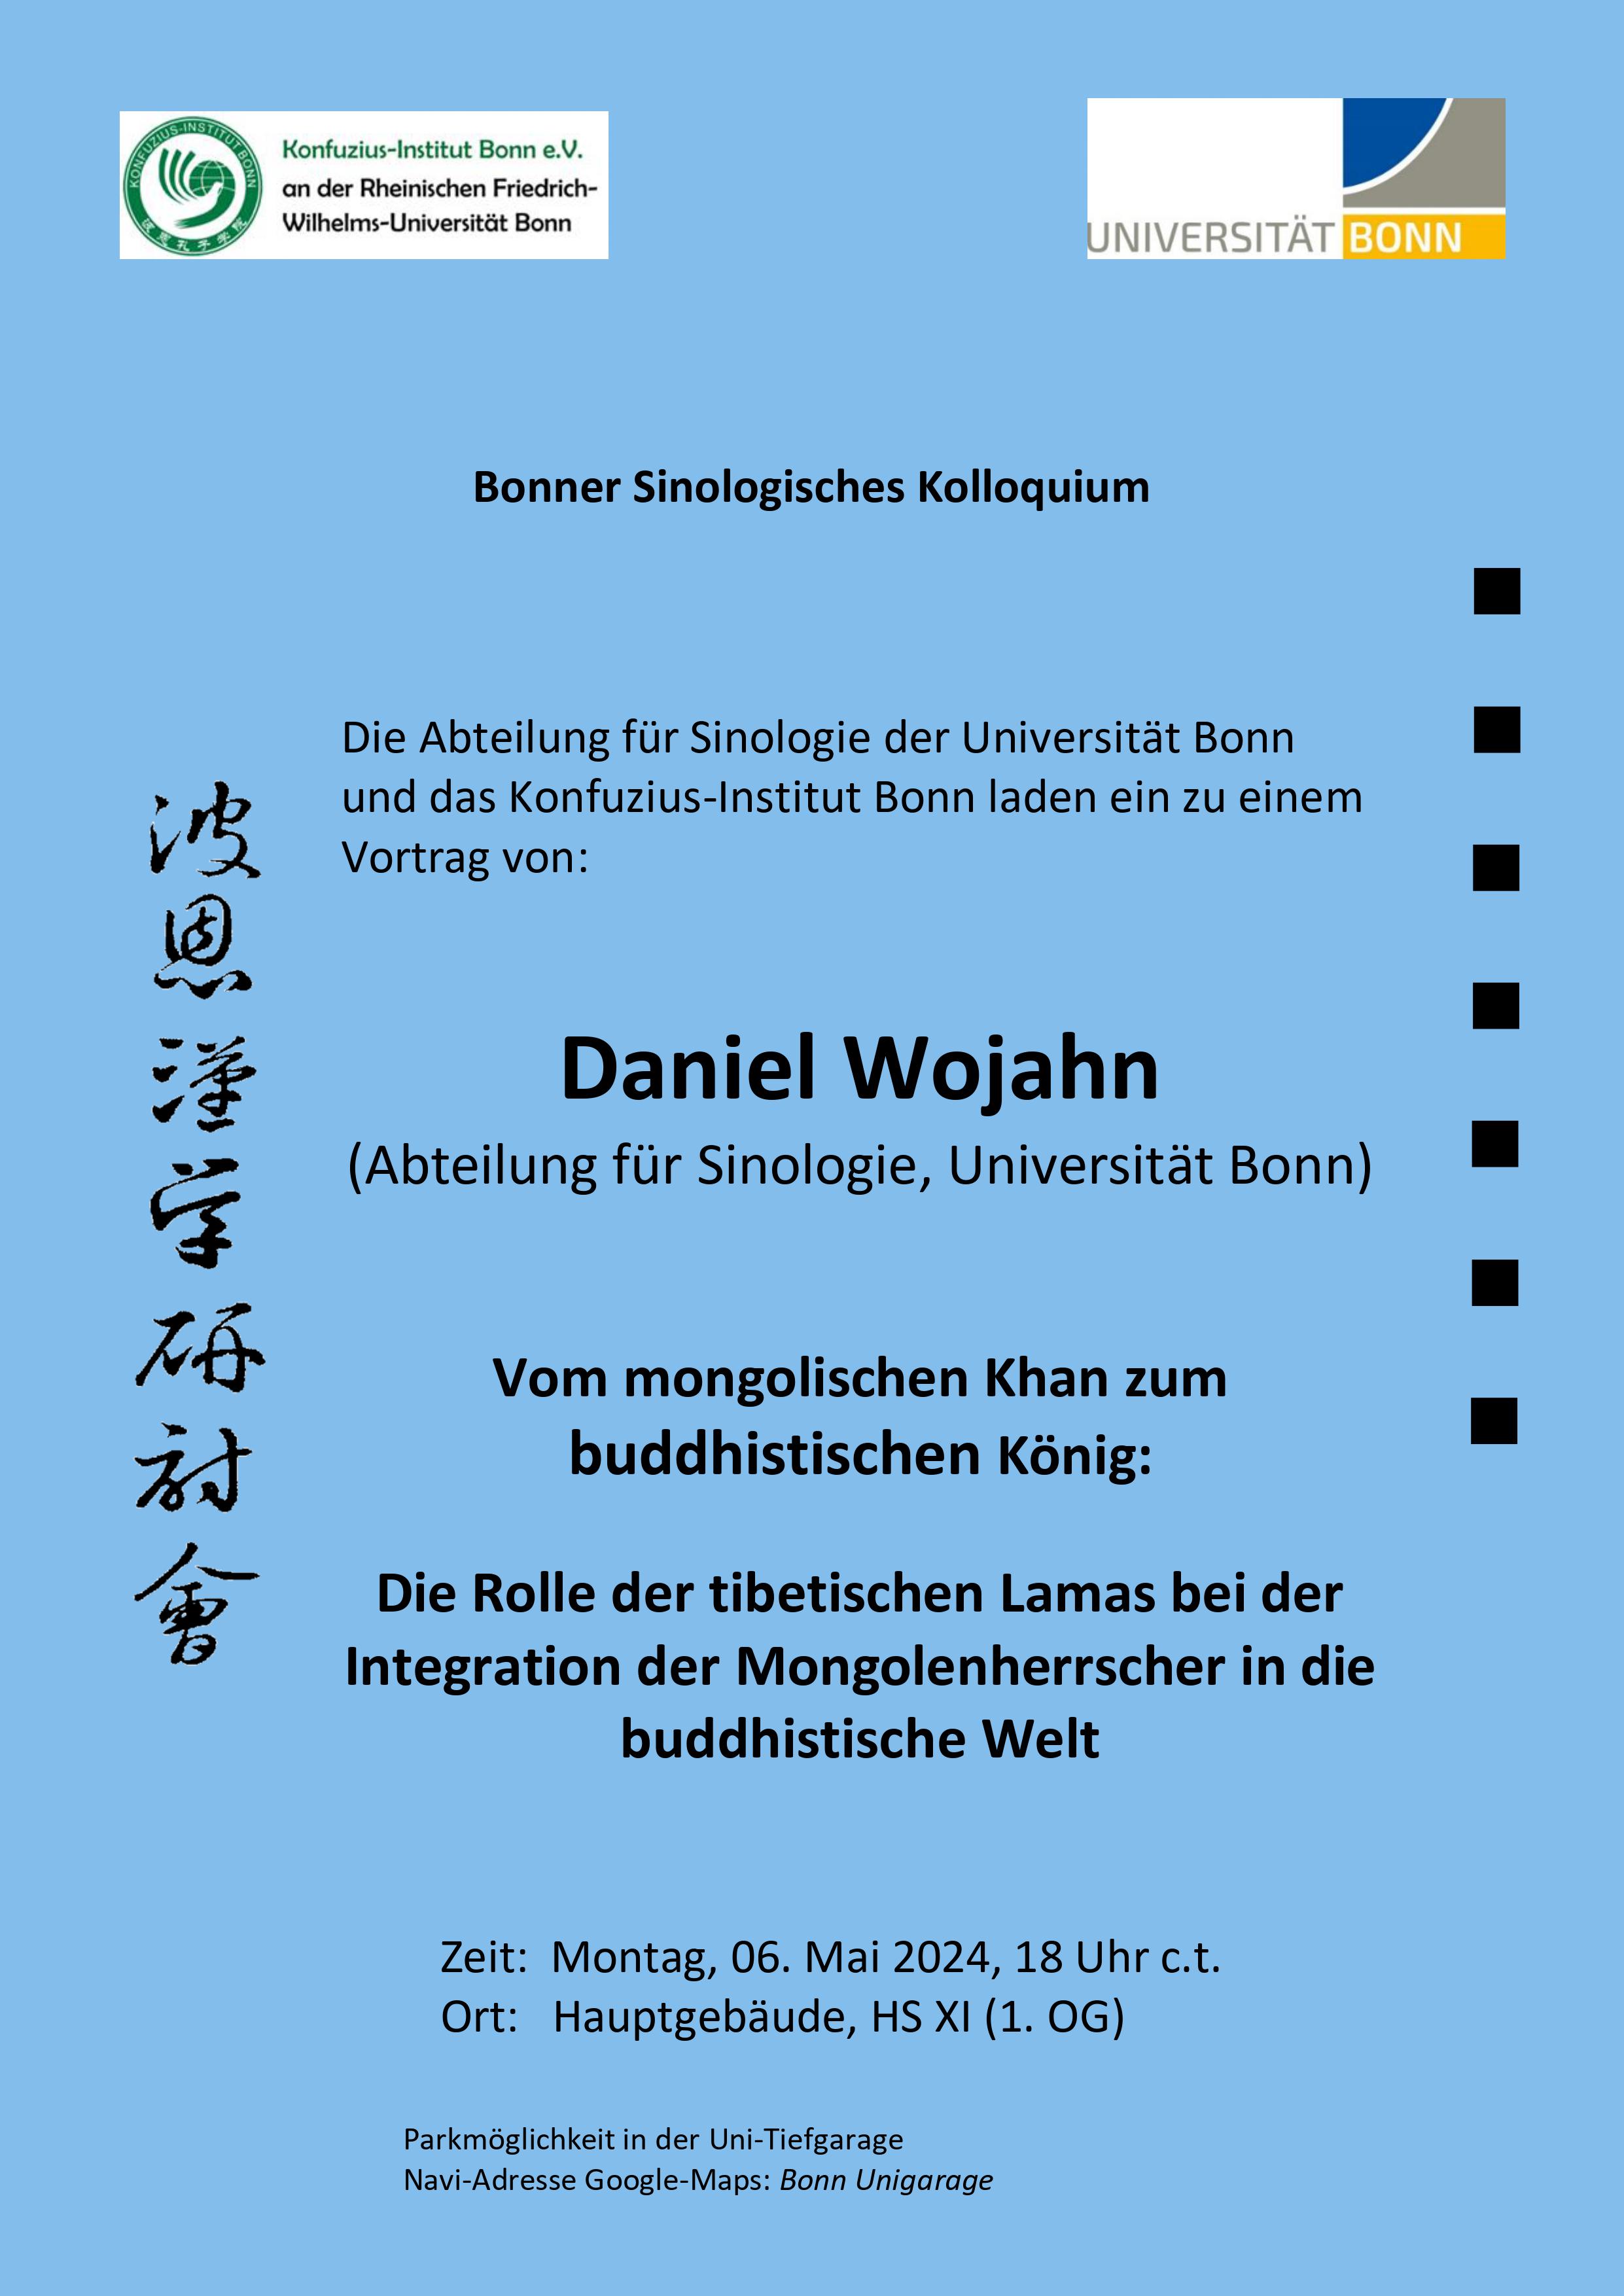 Vorankündigung: Vortrag von Daniel Wojahn am 06.05.2024